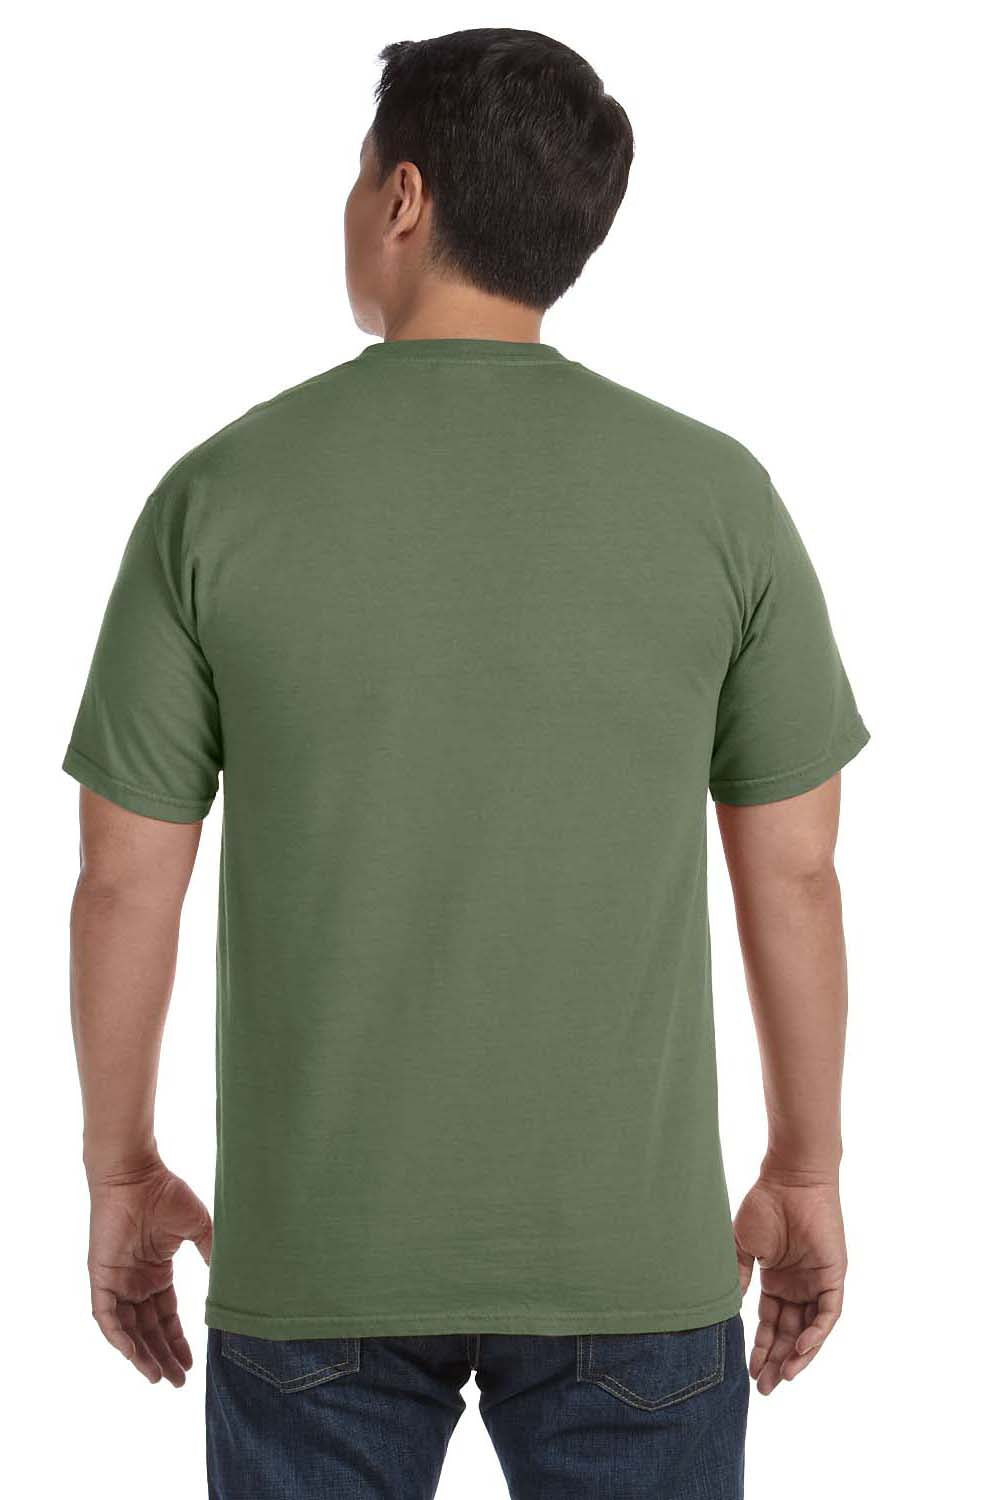 Comfort Colors C1717 Mens Short Sleeve Crewneck T-Shirt Moss Green Back